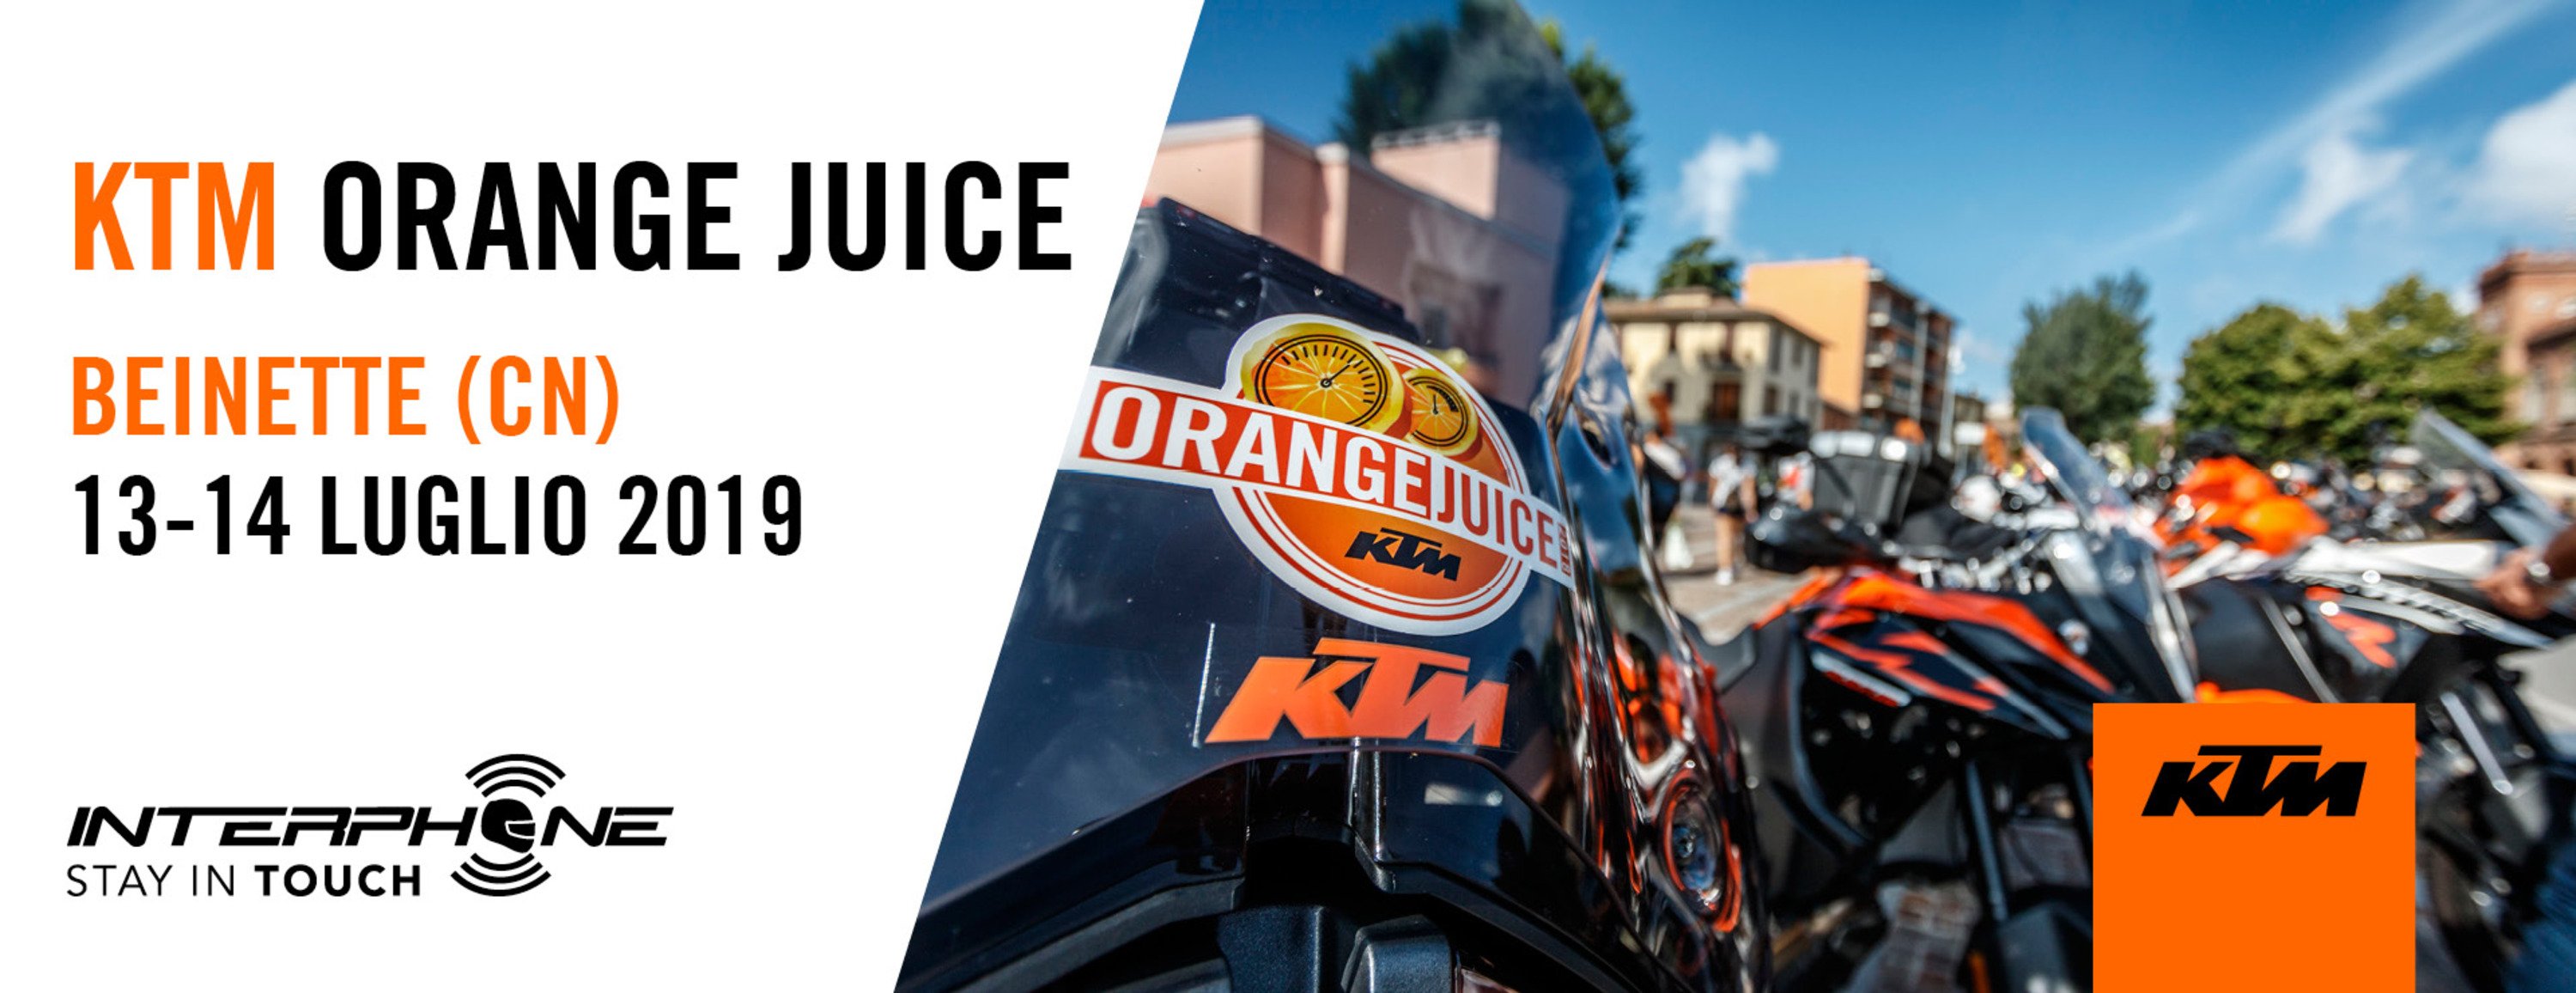 KTM: tornano gli Orange Juice